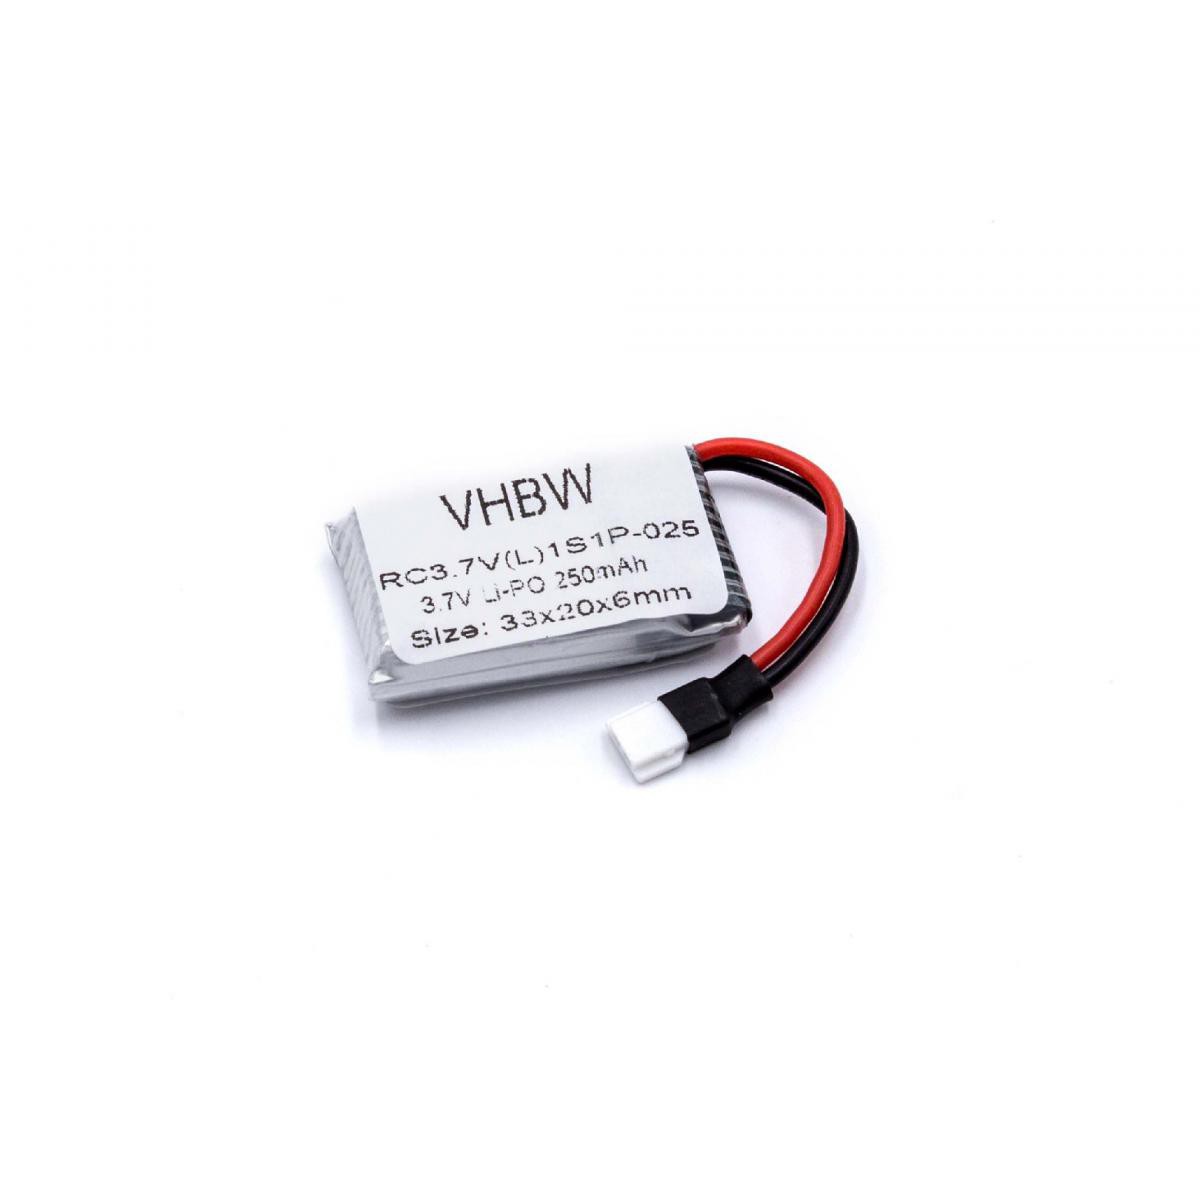 Vhbw - vhbw Li-Polymer Batterie 250mAh (3.7V) compatible avec Hubsan H107D, X4 H107 modèles réduits, drone - Accessoires et pièces